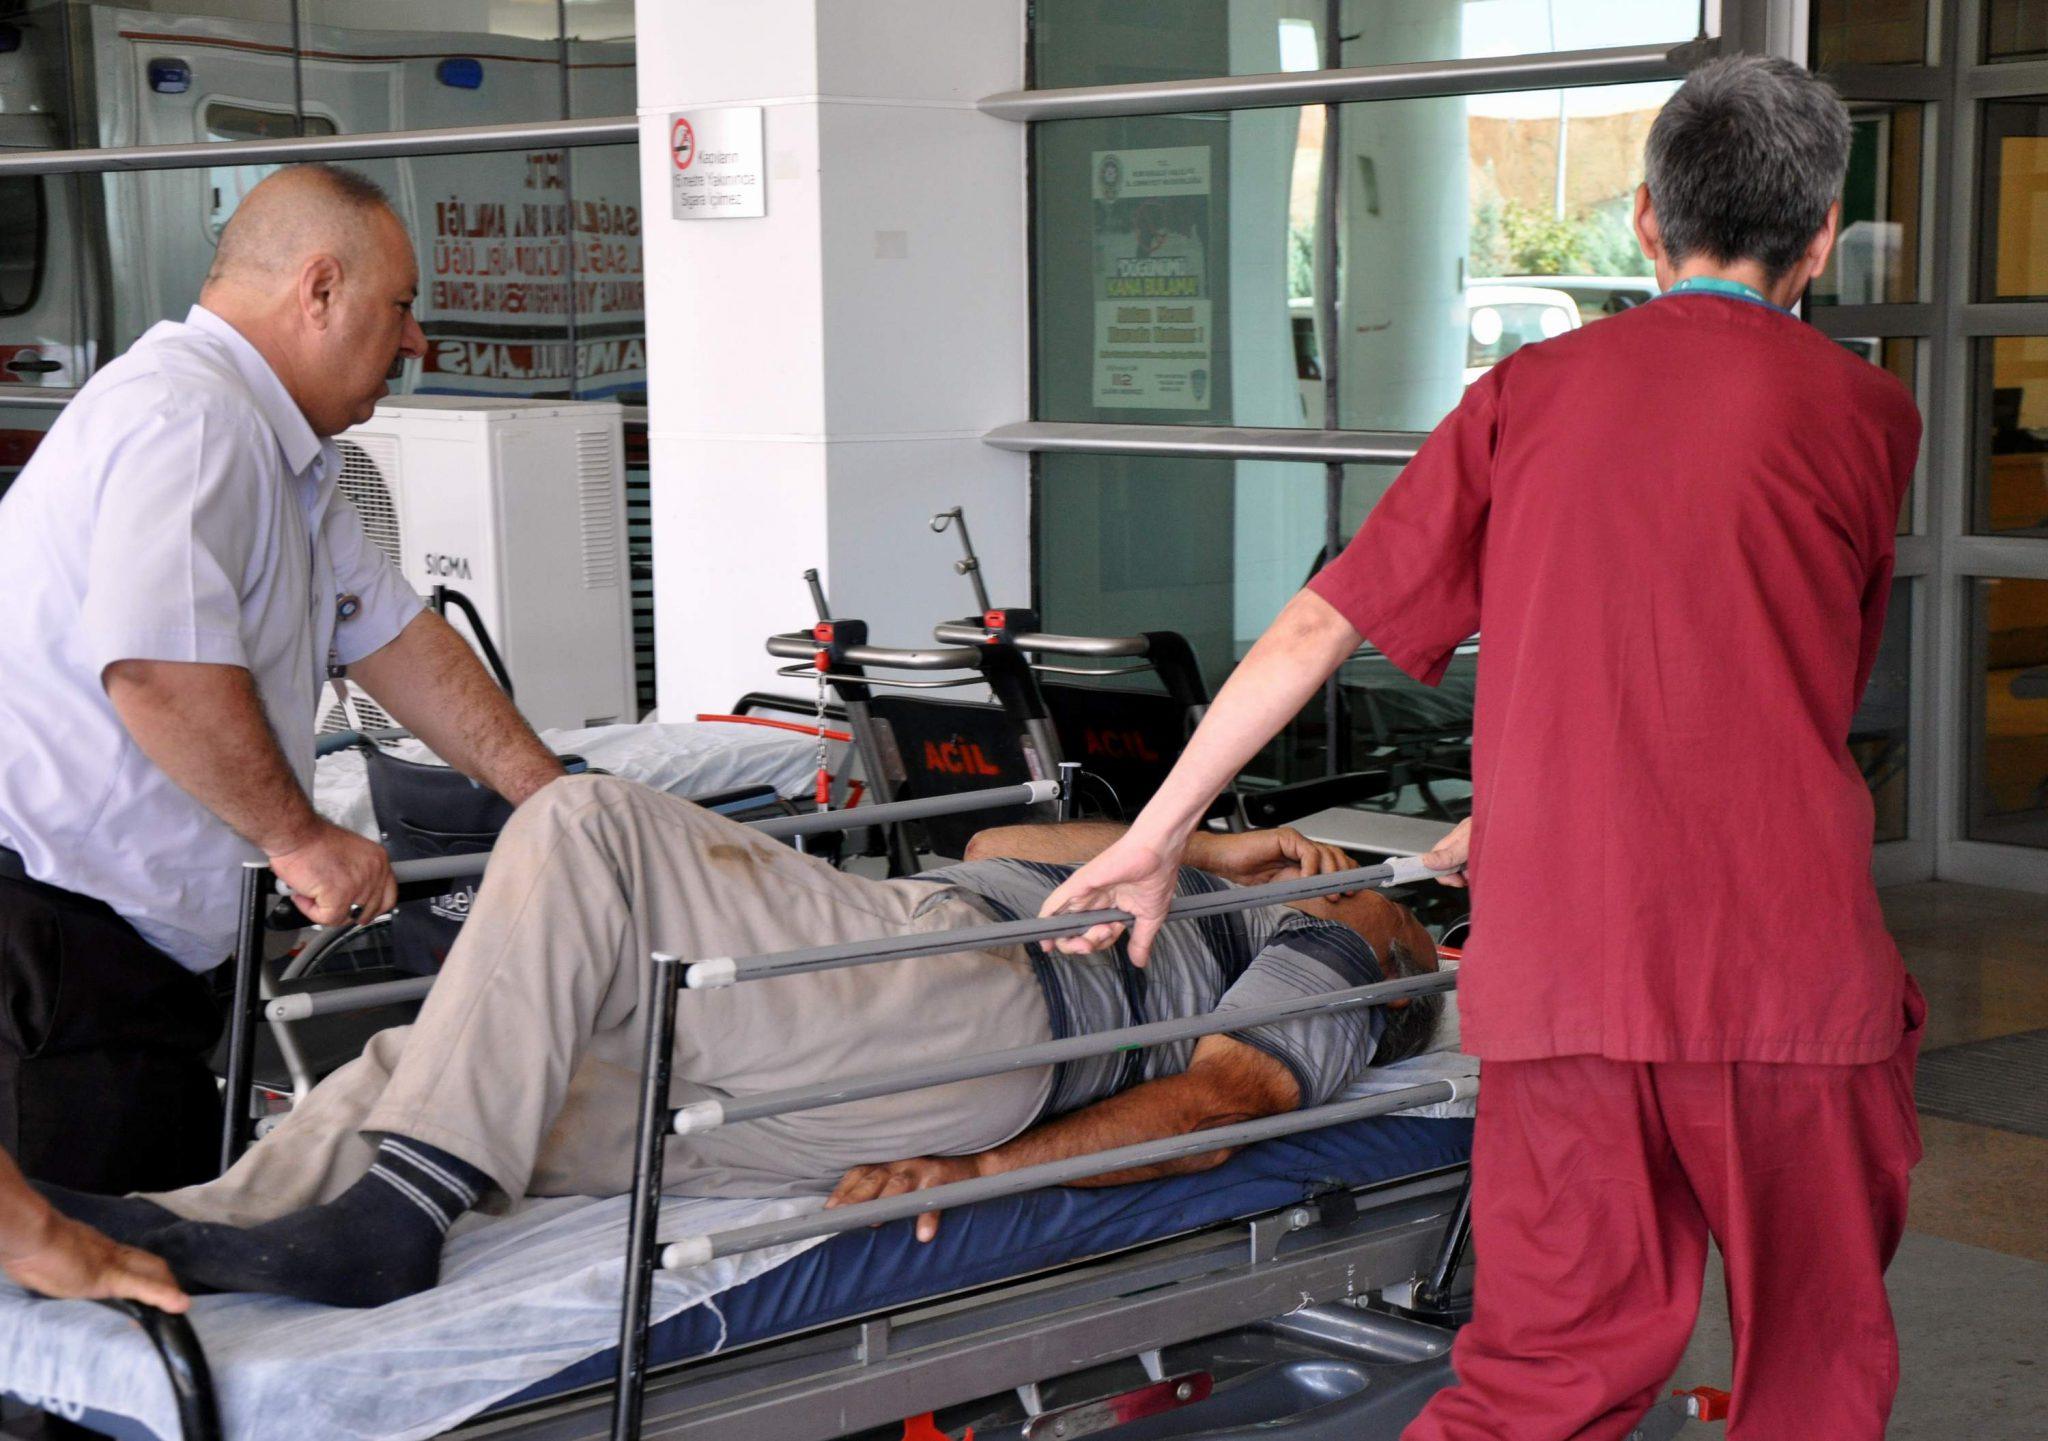 “Acemi kasaplar” hastanelik oldu - Kırıkkale Haber, Son Dakika Kırıkkale Haberleri